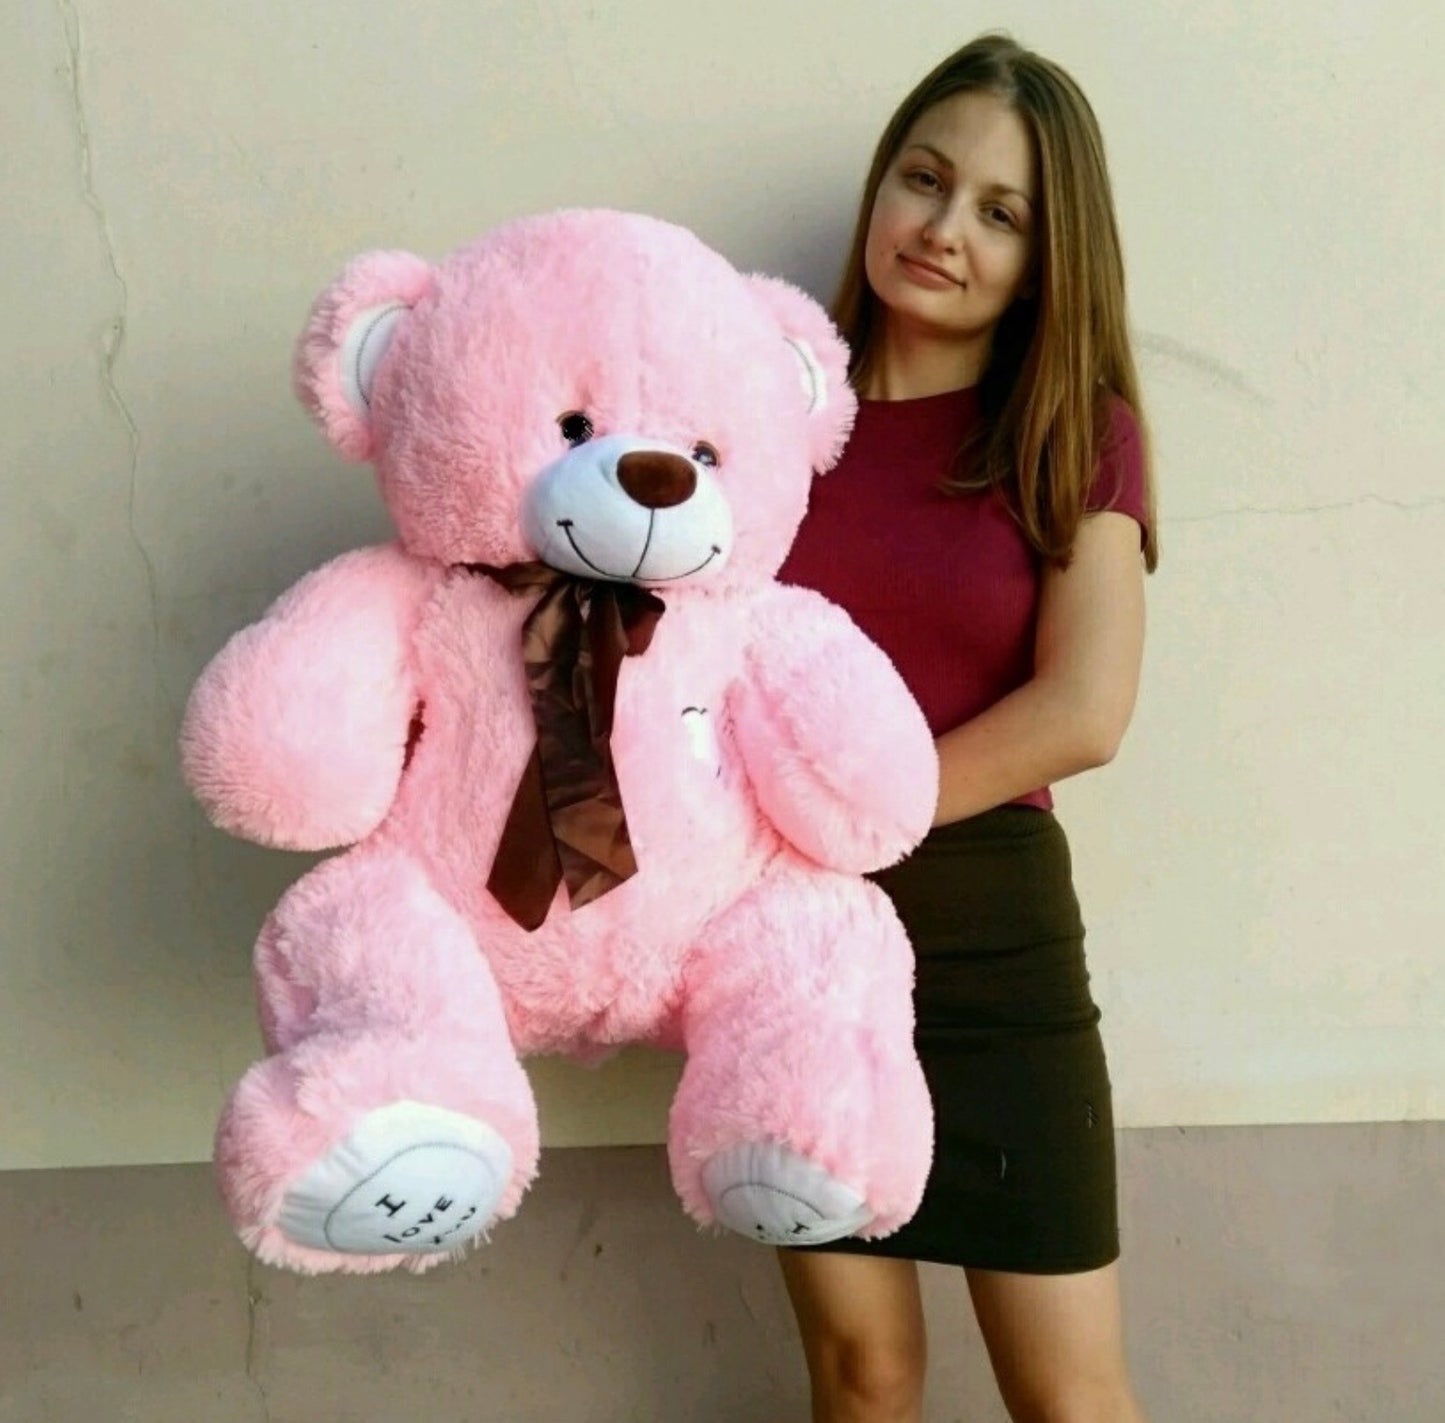 XL Teddy 100 CM "I LOVE YOU" Pink